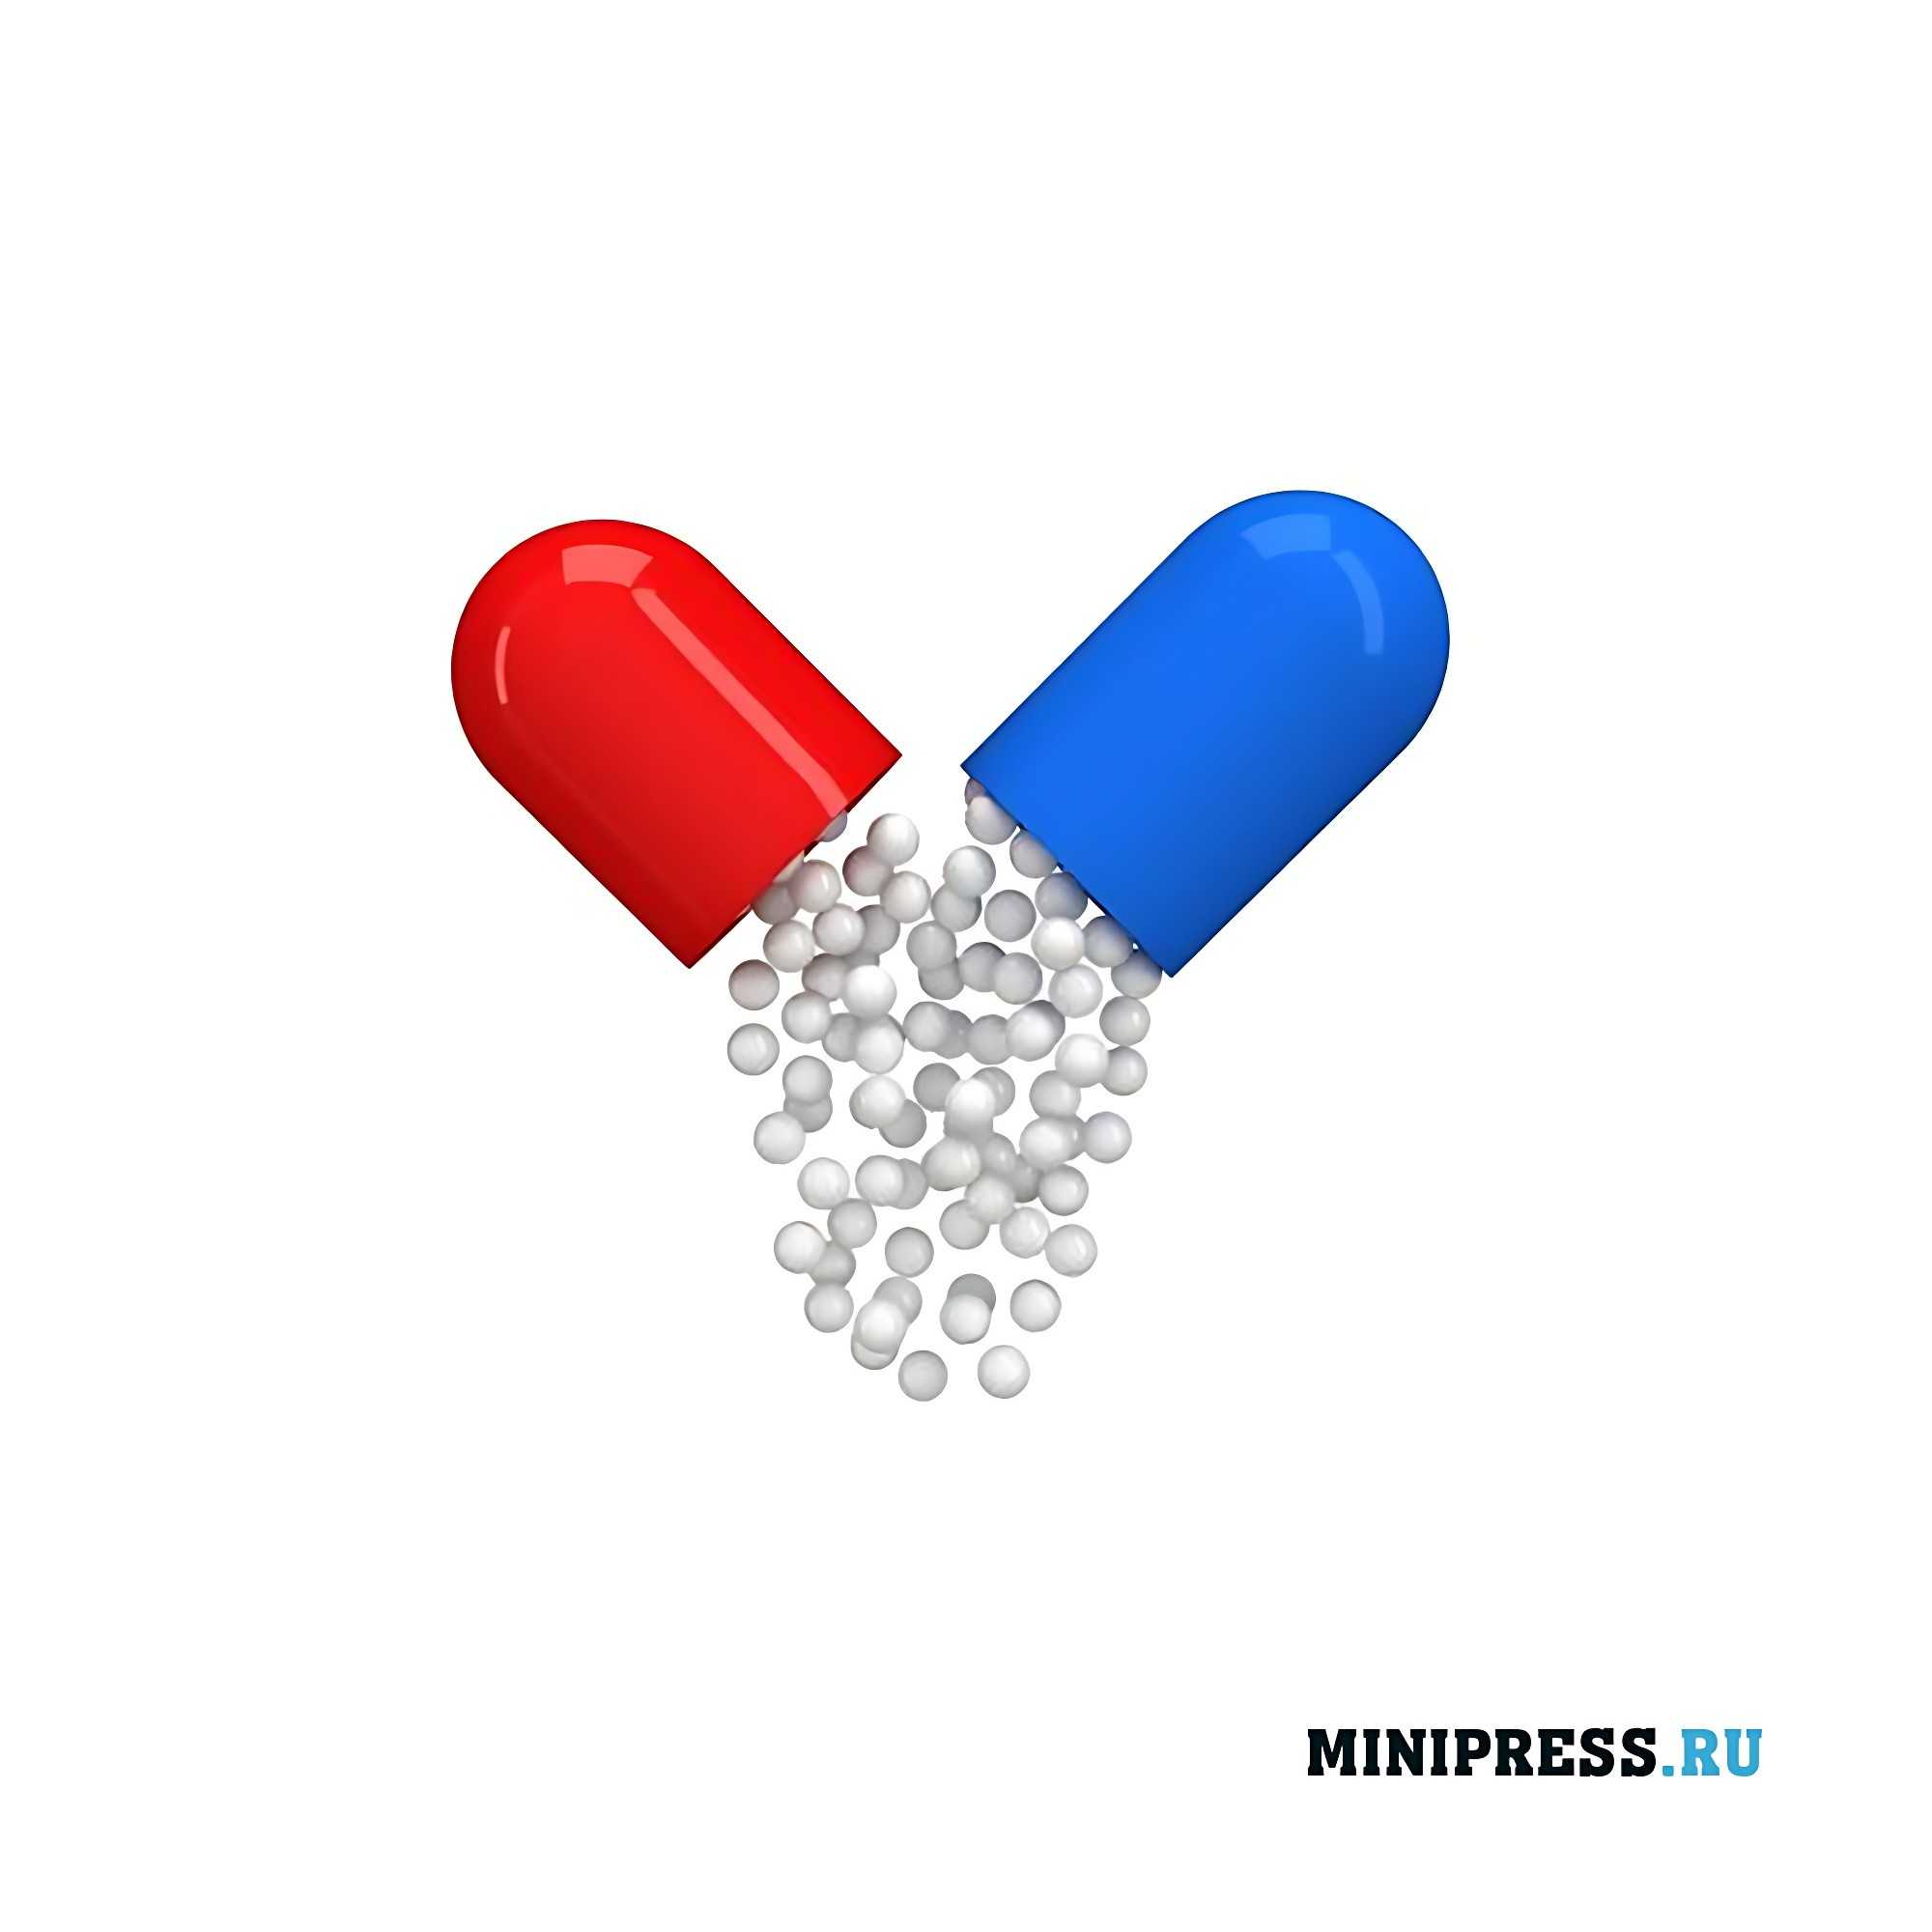 Pharmaceutical pellet microspheres